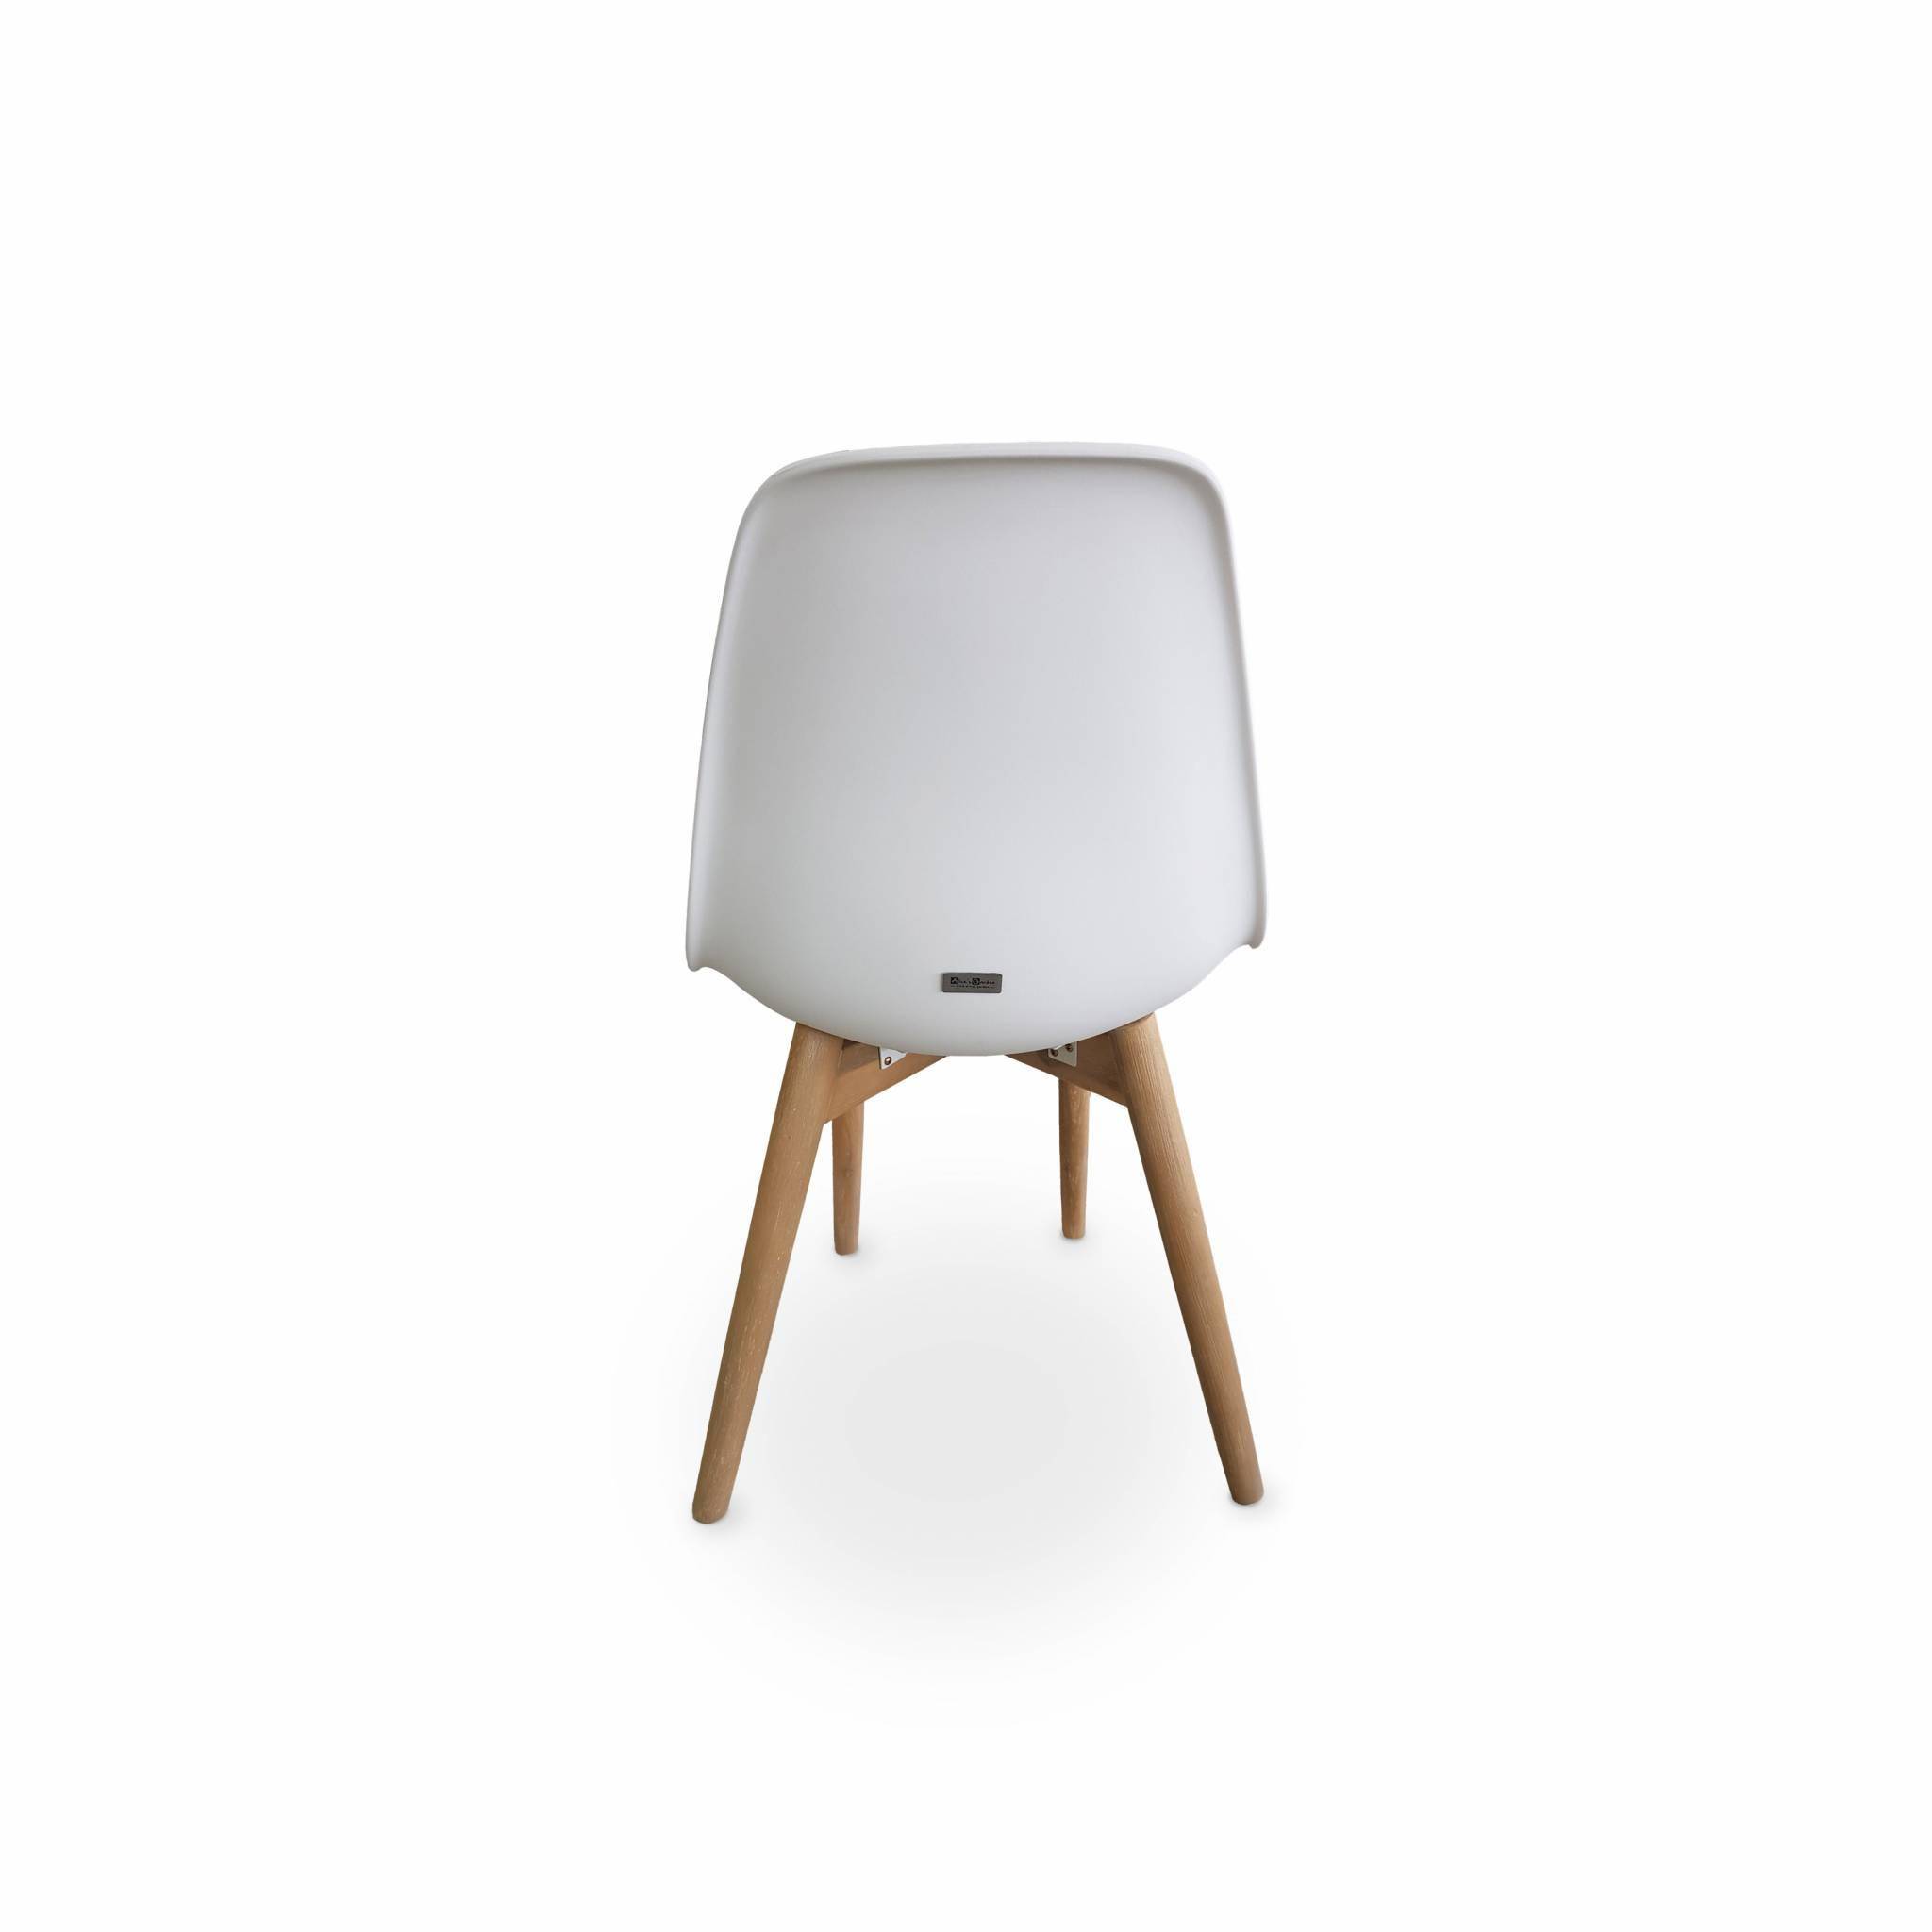 4er Set skandinavische Stühle Penida, aus Akazienholz und weißem Kunstharz gespritzt, innen/außen Photo3